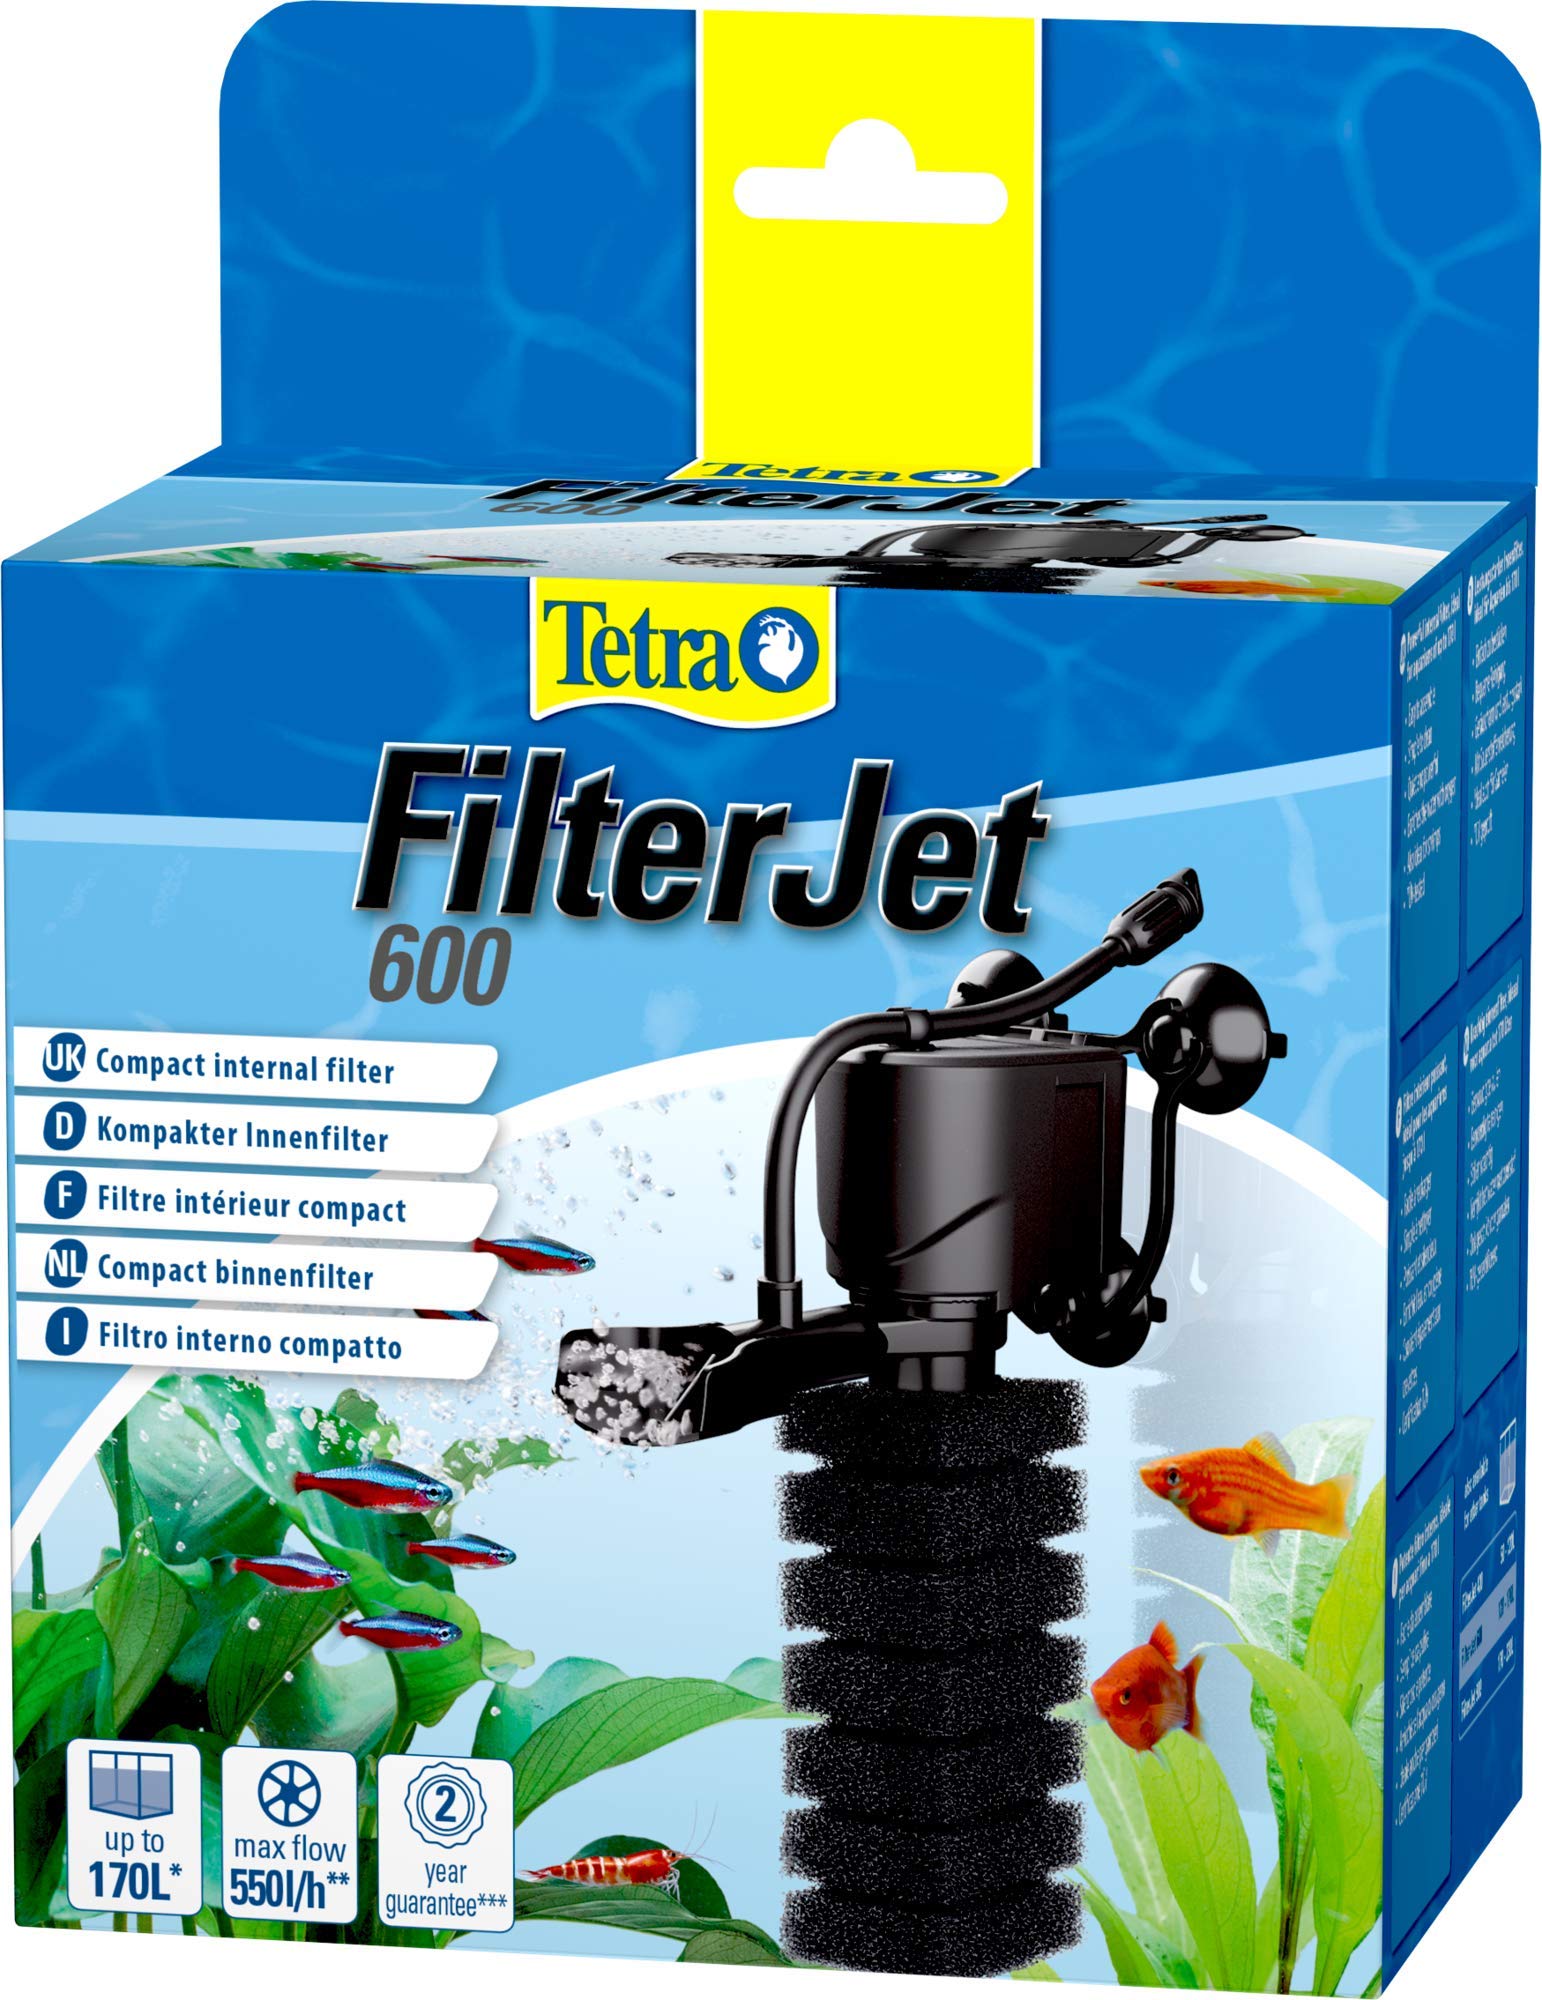 Tetra FilterJet 600 - leistungsstarker Aquarium Innenfilter mit Sauerstoffanreicherung, Aquarium Filter für Aquarien bis 170 L